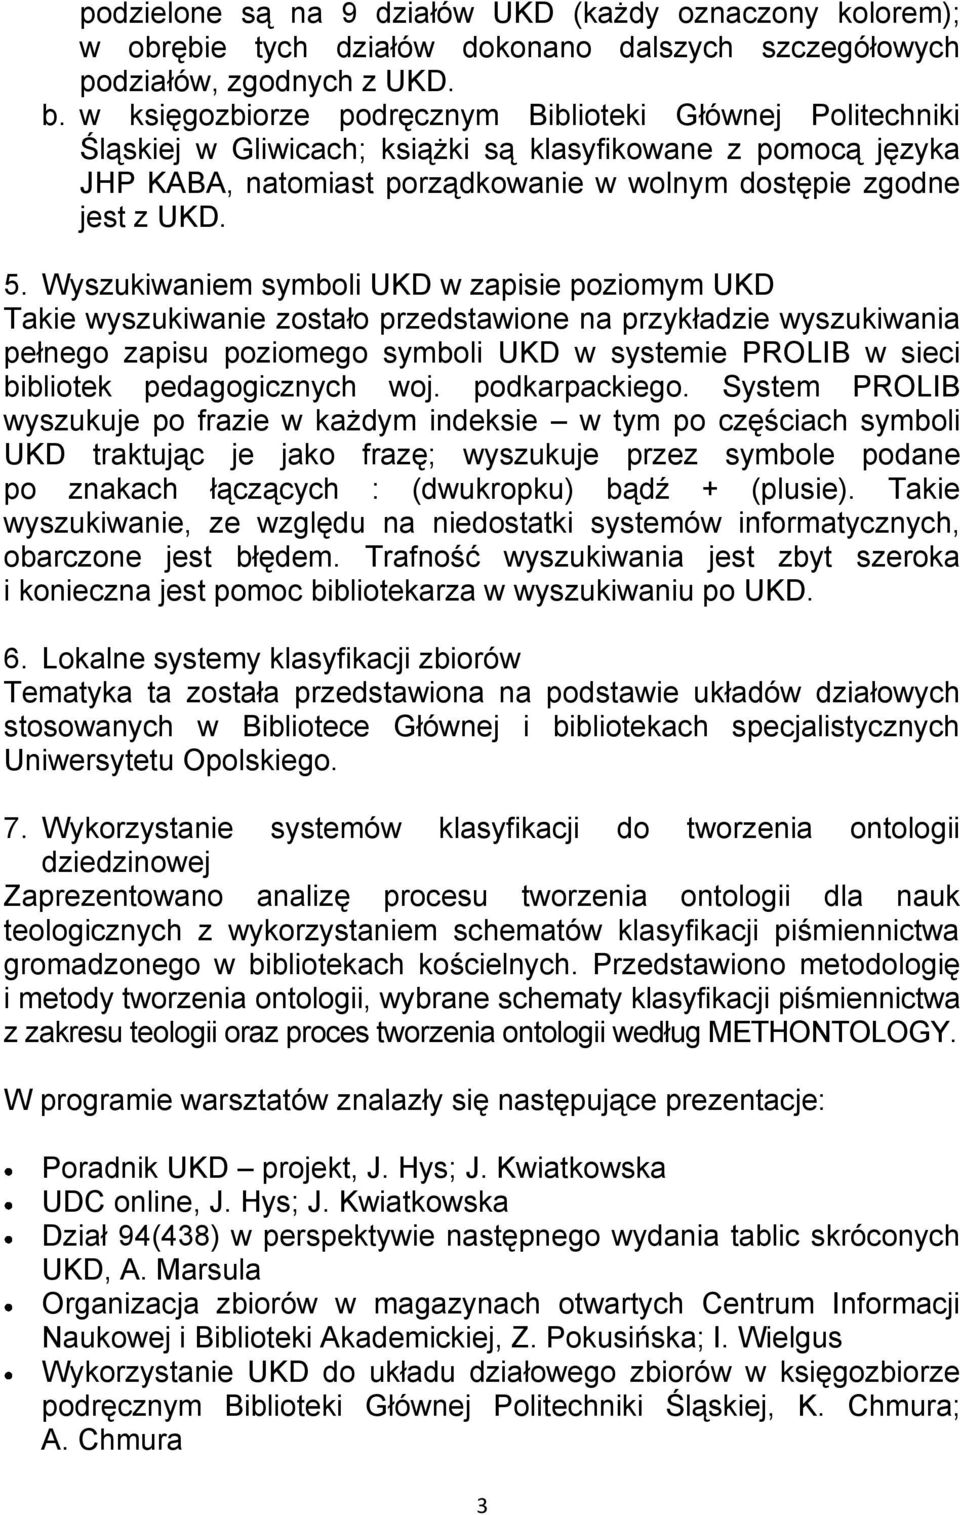 Wyszukiwaniem symboli UKD w zapisie poziomym UKD Takie wyszukiwanie zostało przedstawione na przykładzie wyszukiwania pełnego zapisu poziomego symboli UKD w systemie PROLIB w sieci bibliotek